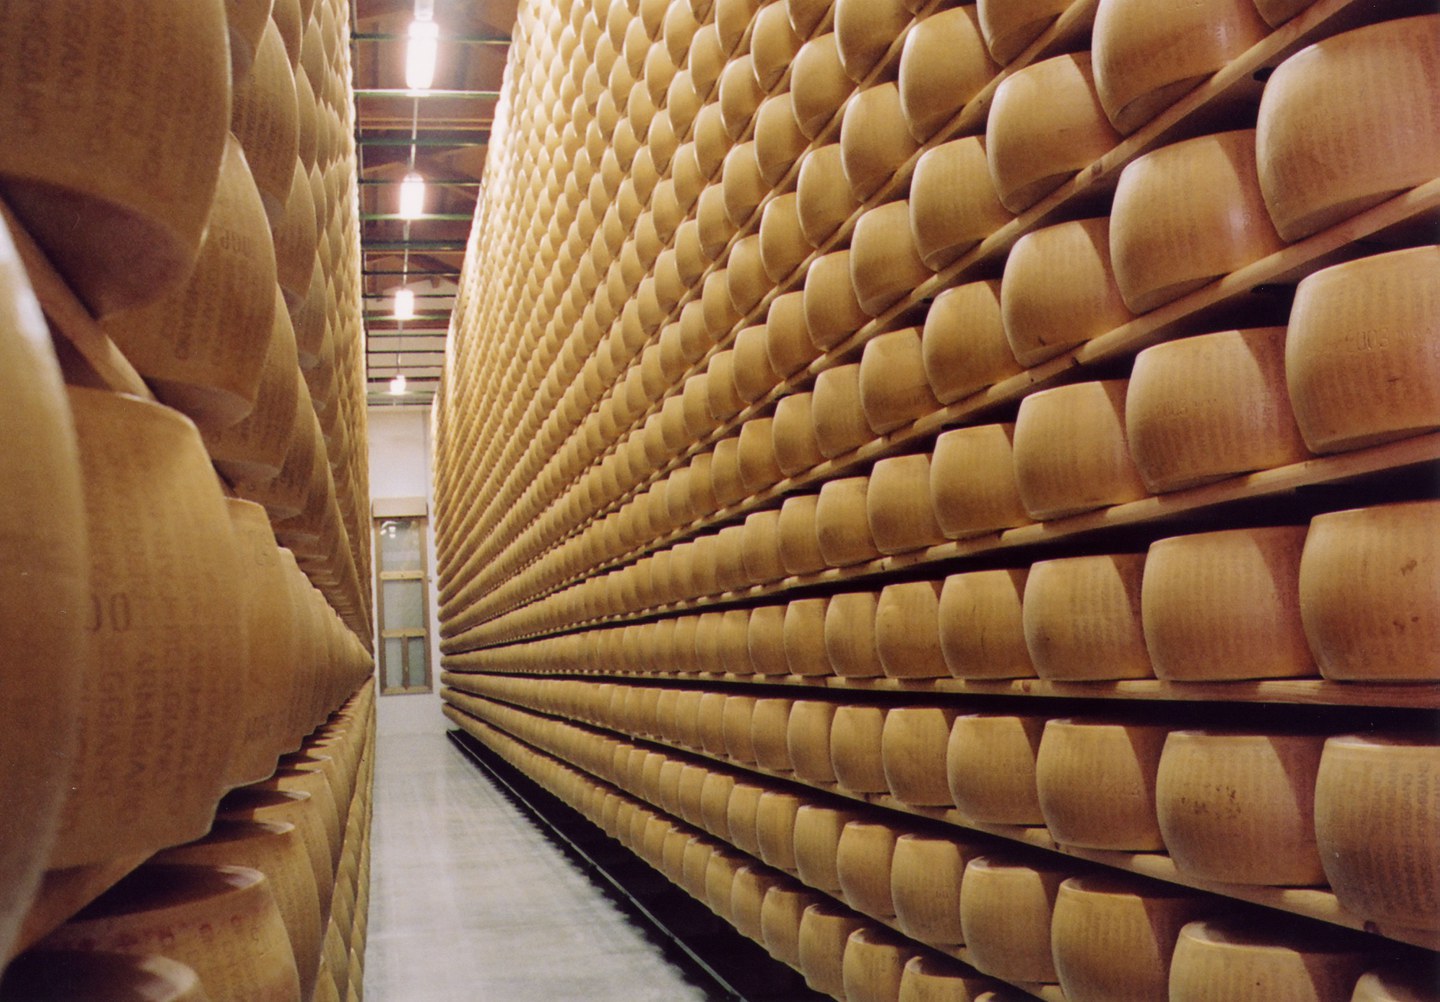 Visit a Parmigiano Reggiano cheese dairy